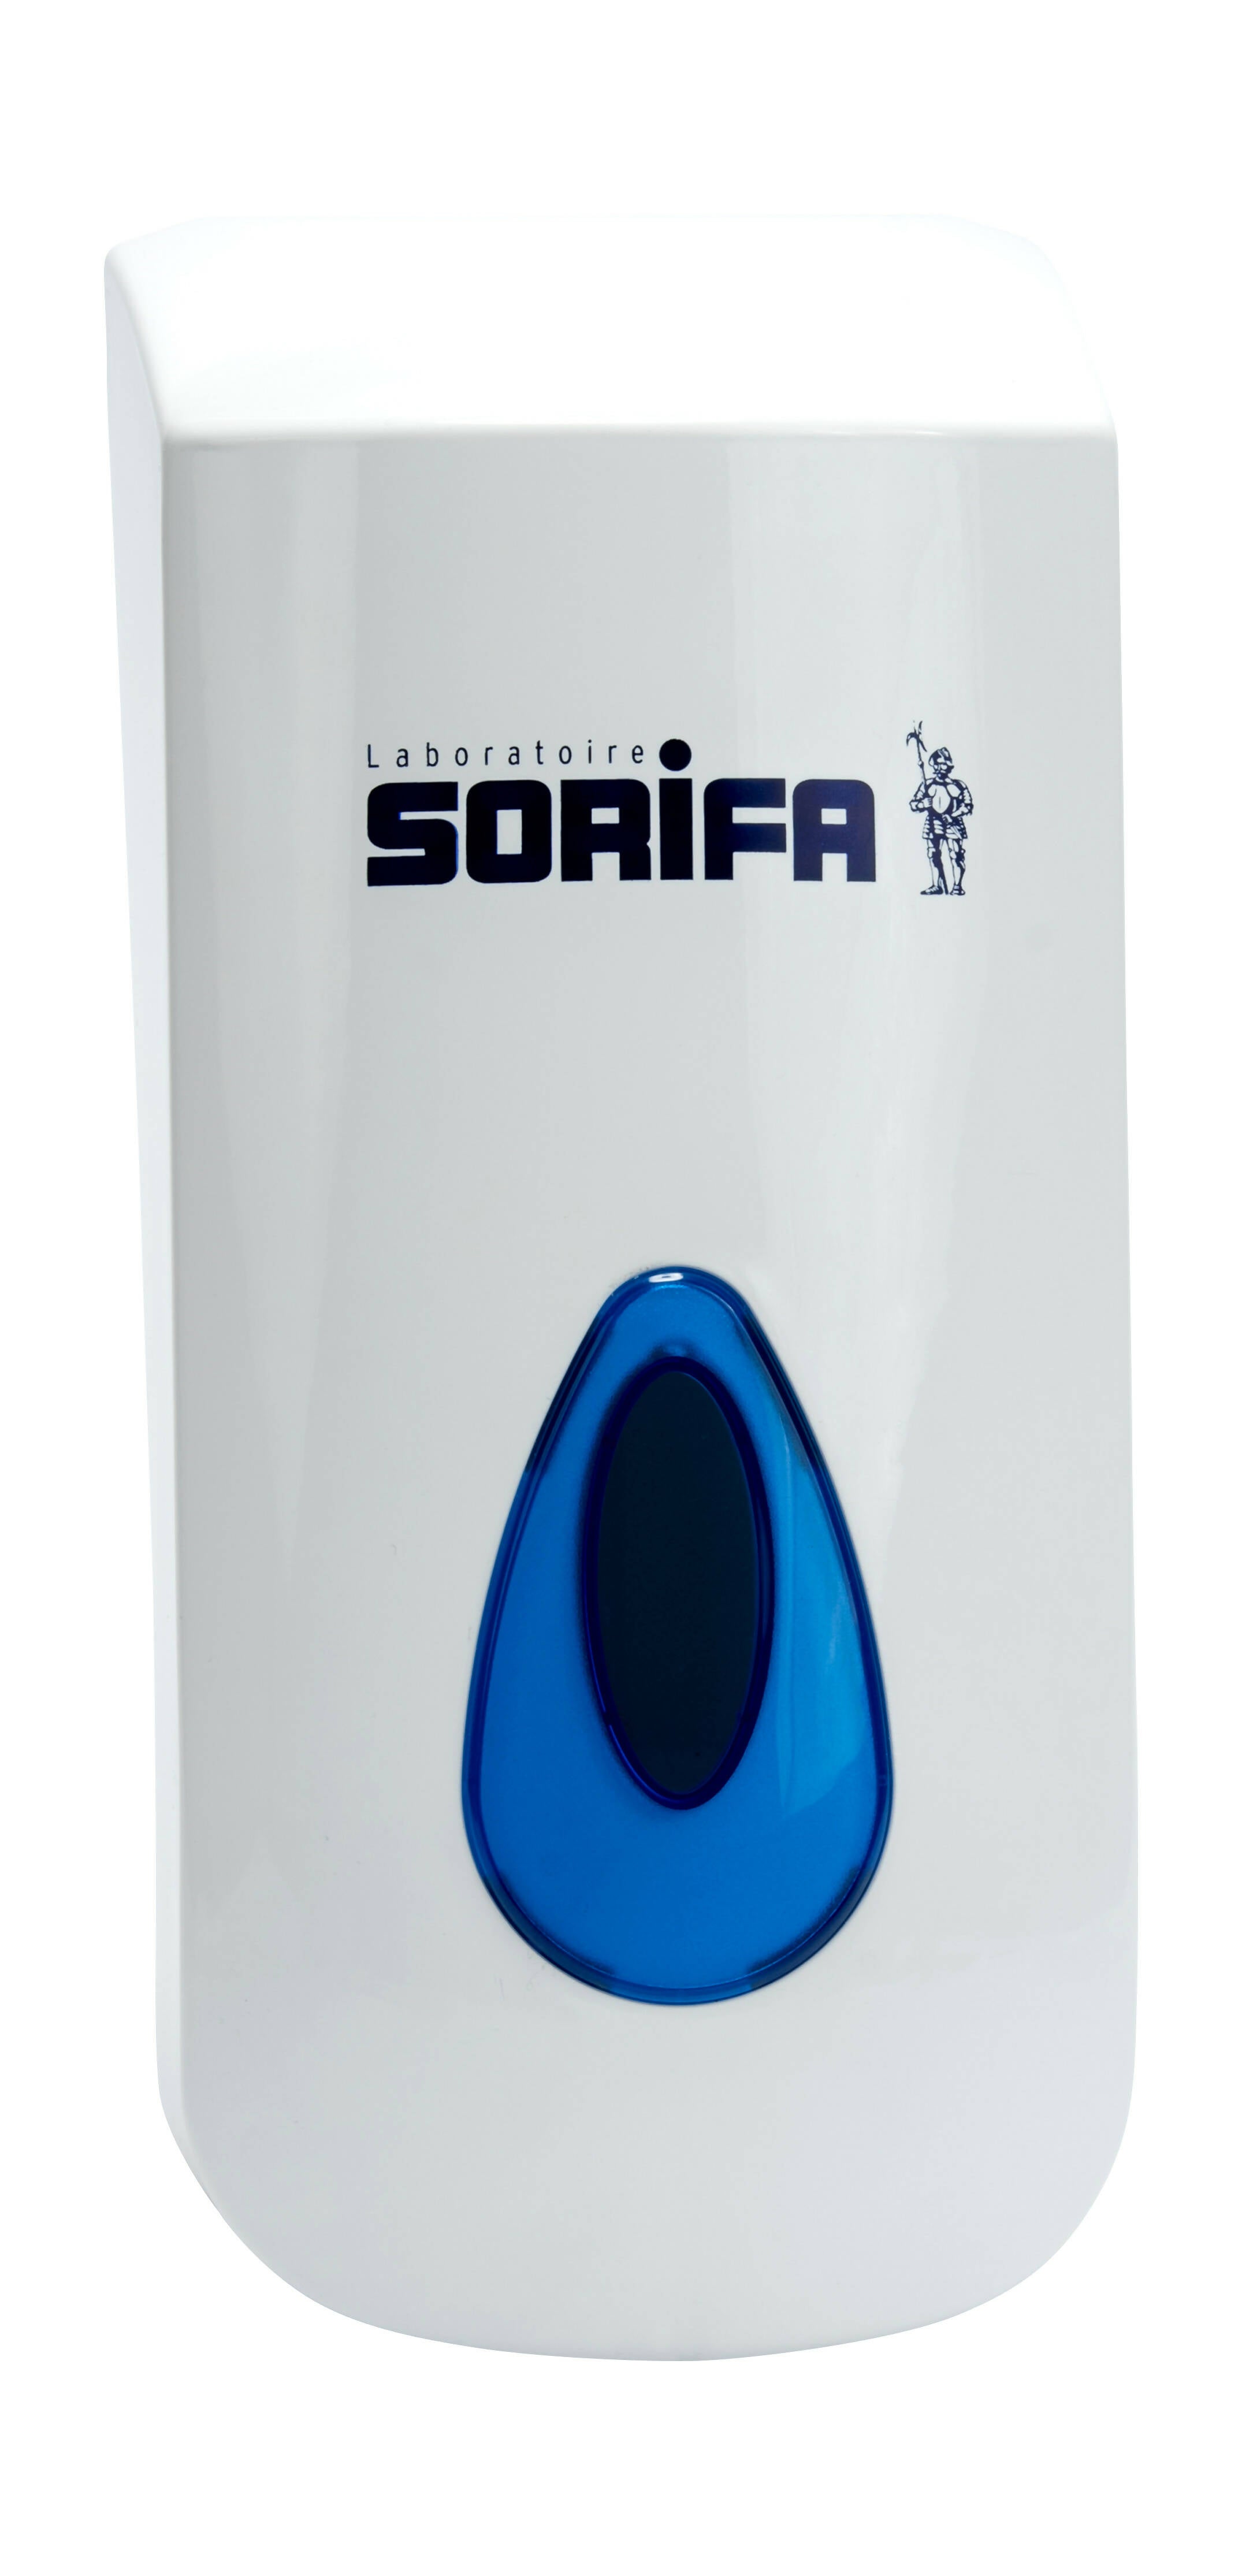 SORIFA – Robuster, ergonomischer, abschließbarer Wandspender aus Metall für 1L-Flasche der Marke SORIFA – Für Gele und Flüssigseifen.